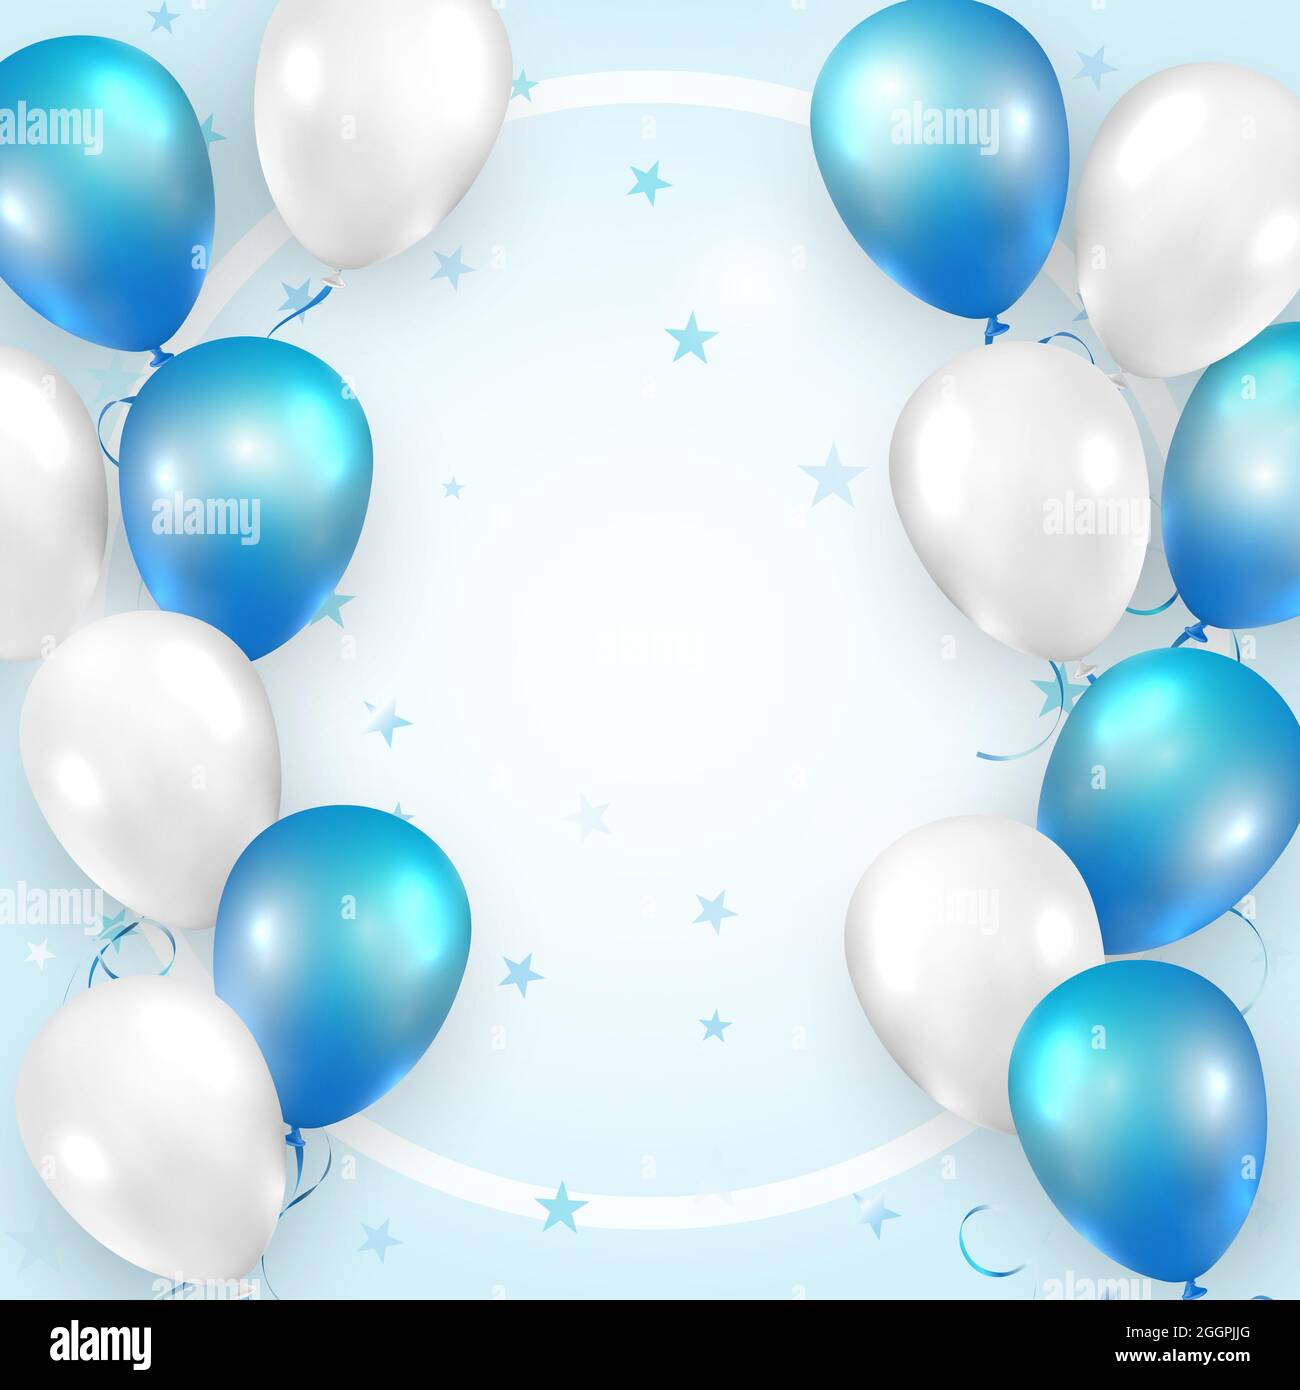 Elegante azul blanco ballon y cinta Feliz cumpleaños tarjeta de celebración  banner plantilla patrón de estrellas fondo Fotografía de stock - Alamy